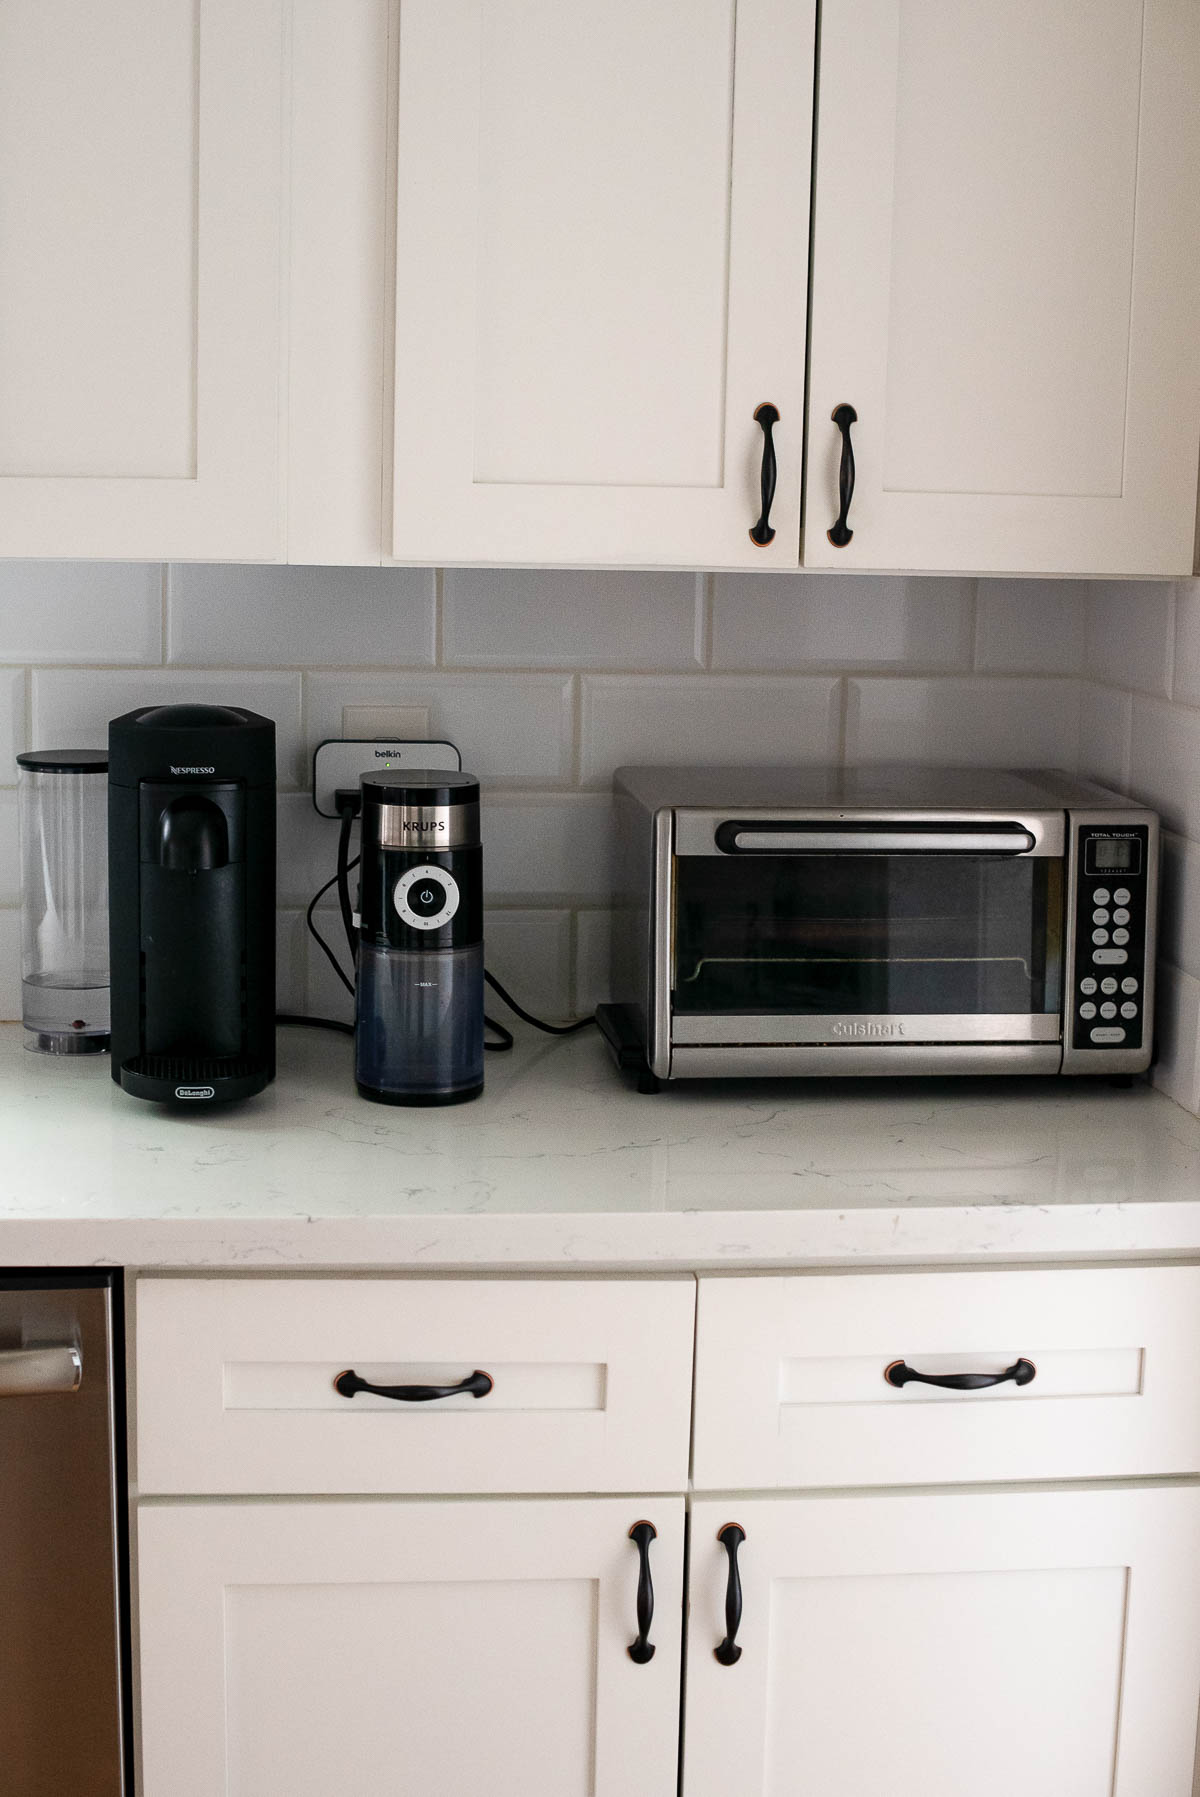 Kitchen Appliance Organization - Toaster Oven, Coffee Bean Grinder, & Nespresso